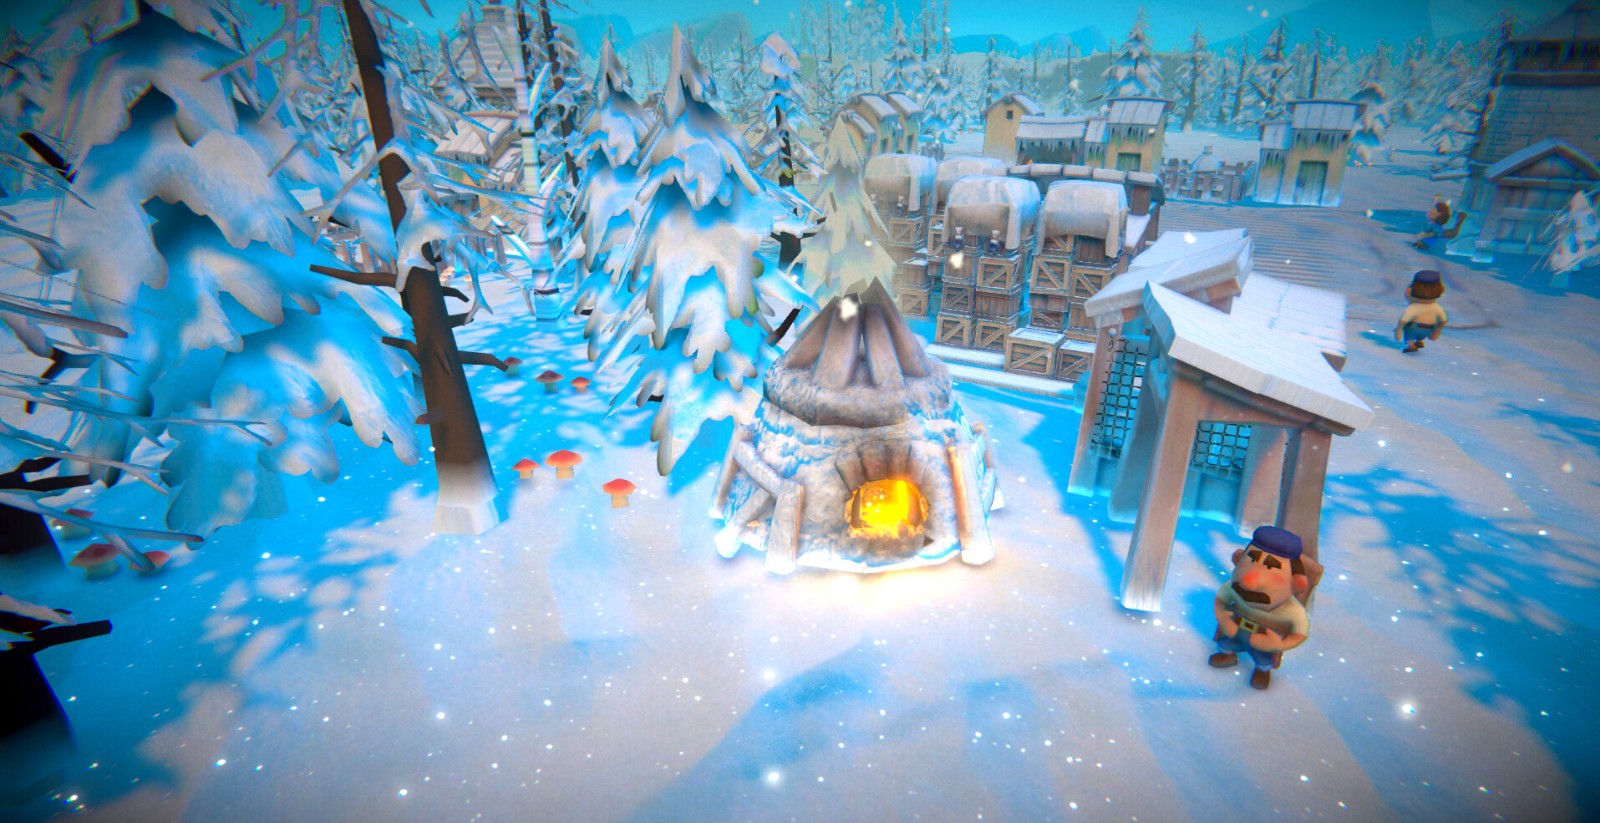 童话风城镇建造游戏《寓言之地》将登陆Steam